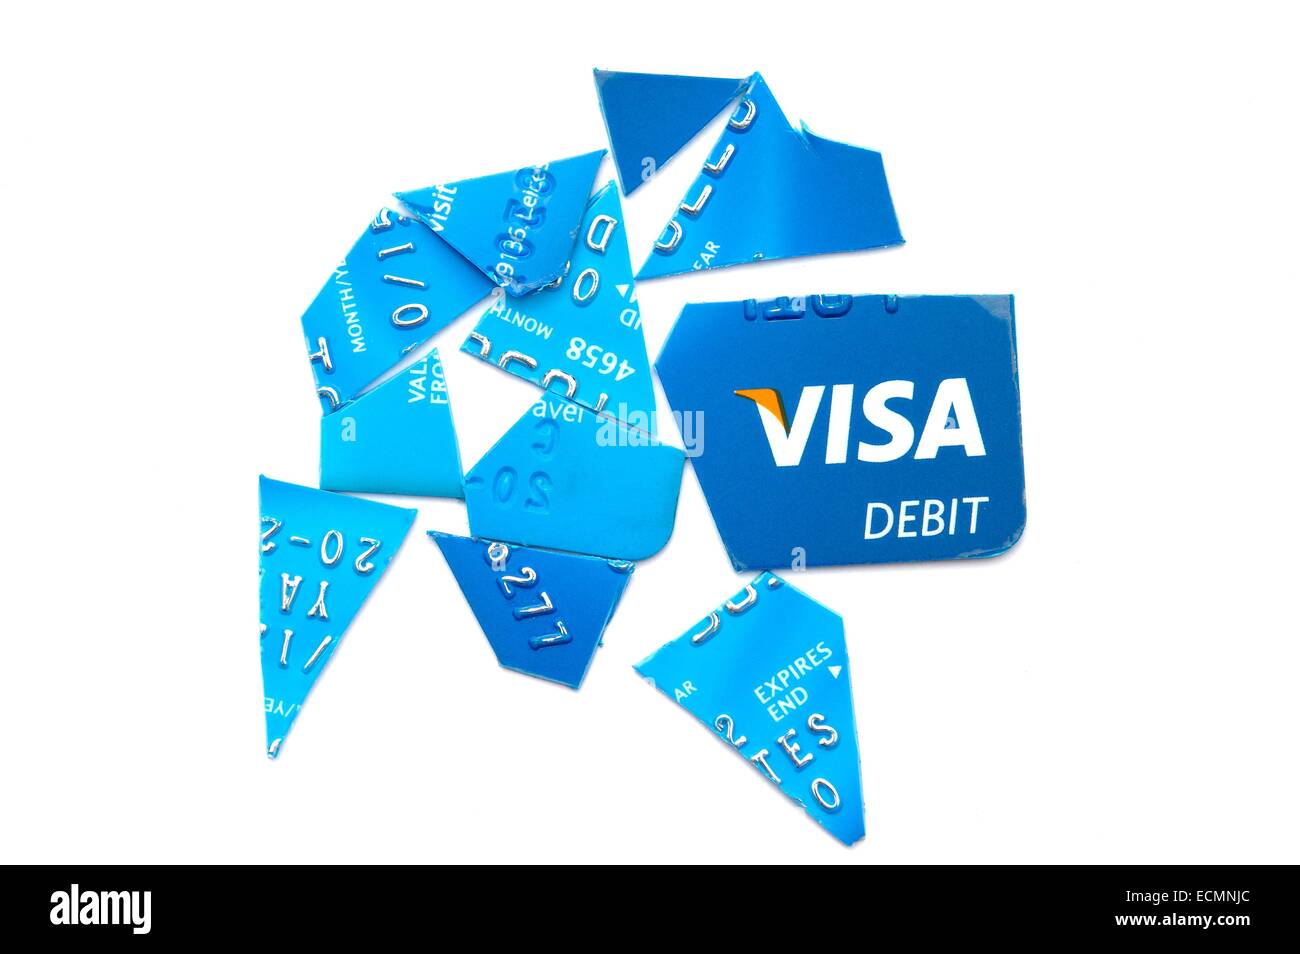 A Barclays bank Visa debit card cut up into pieces England uk Stock Photo